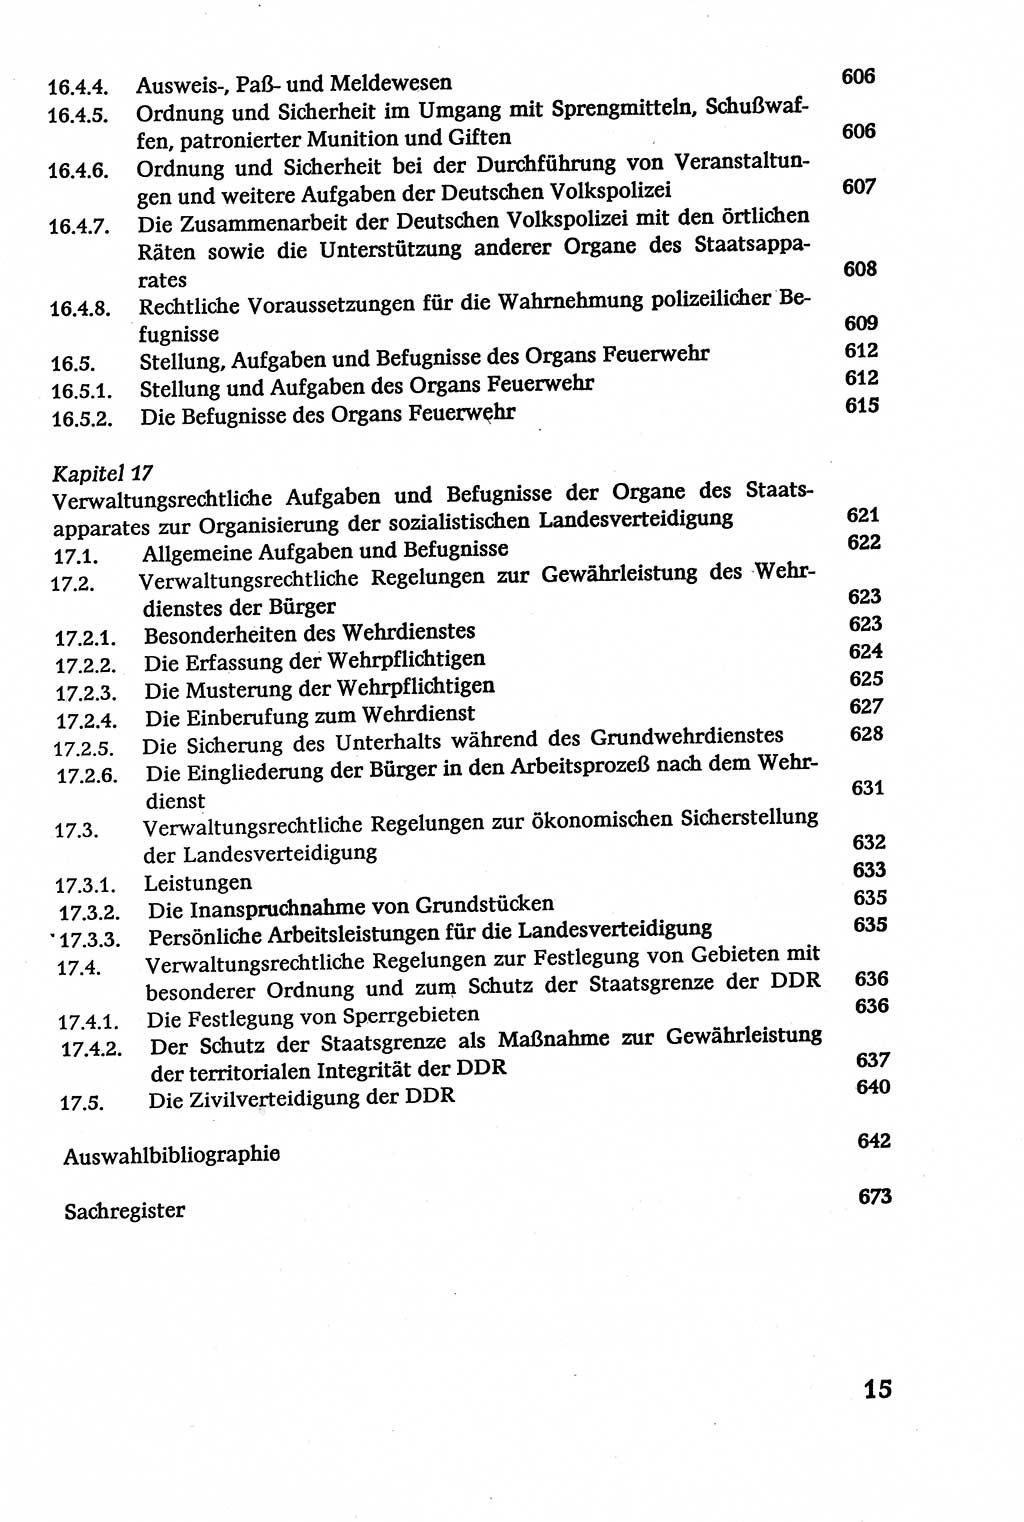 Verwaltungsrecht [Deutsche Demokratische Republik (DDR)], Lehrbuch 1979, Seite 15 (Verw.-R. DDR Lb. 1979, S. 15)